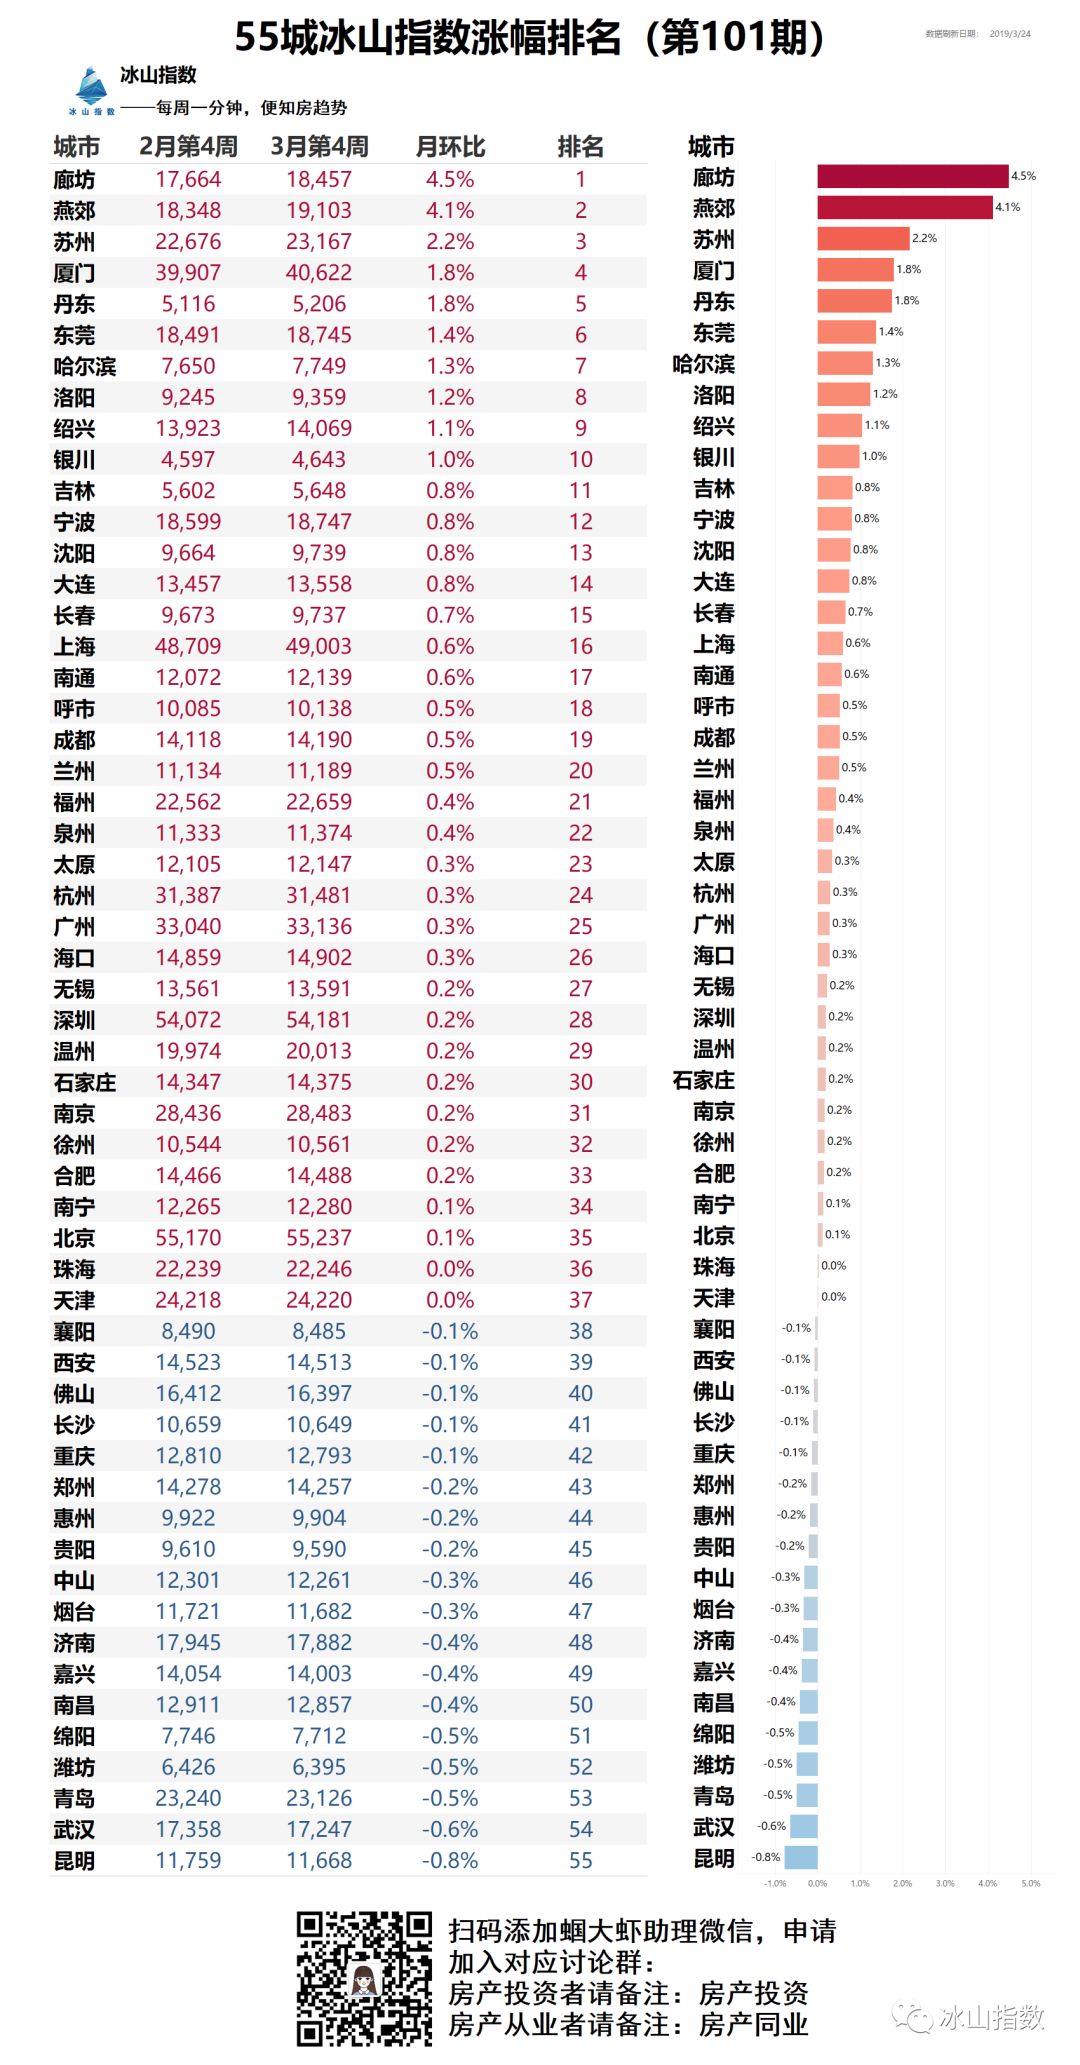 2020房价涨幅排行榜_2016全球房价涨幅榜深圳高居榜首